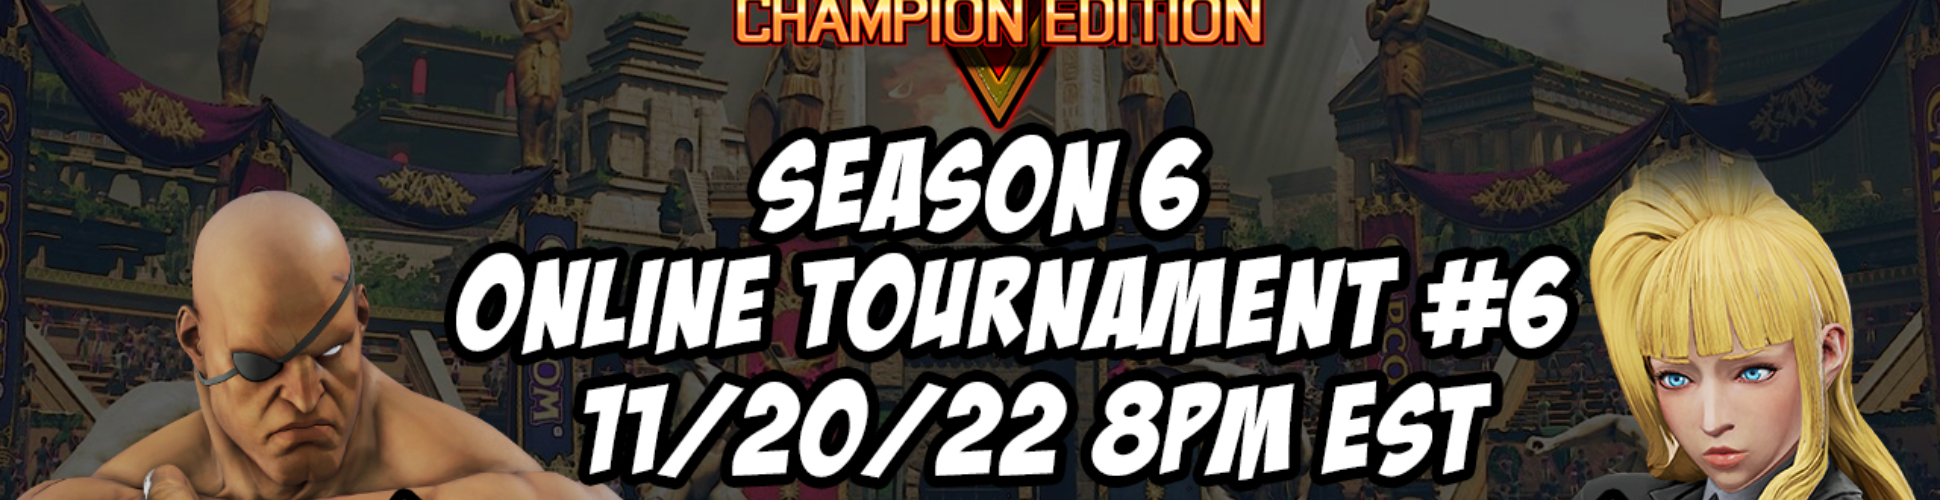 SFV CE Season 6 Online Tournament #6 11/20/22 8pm EST